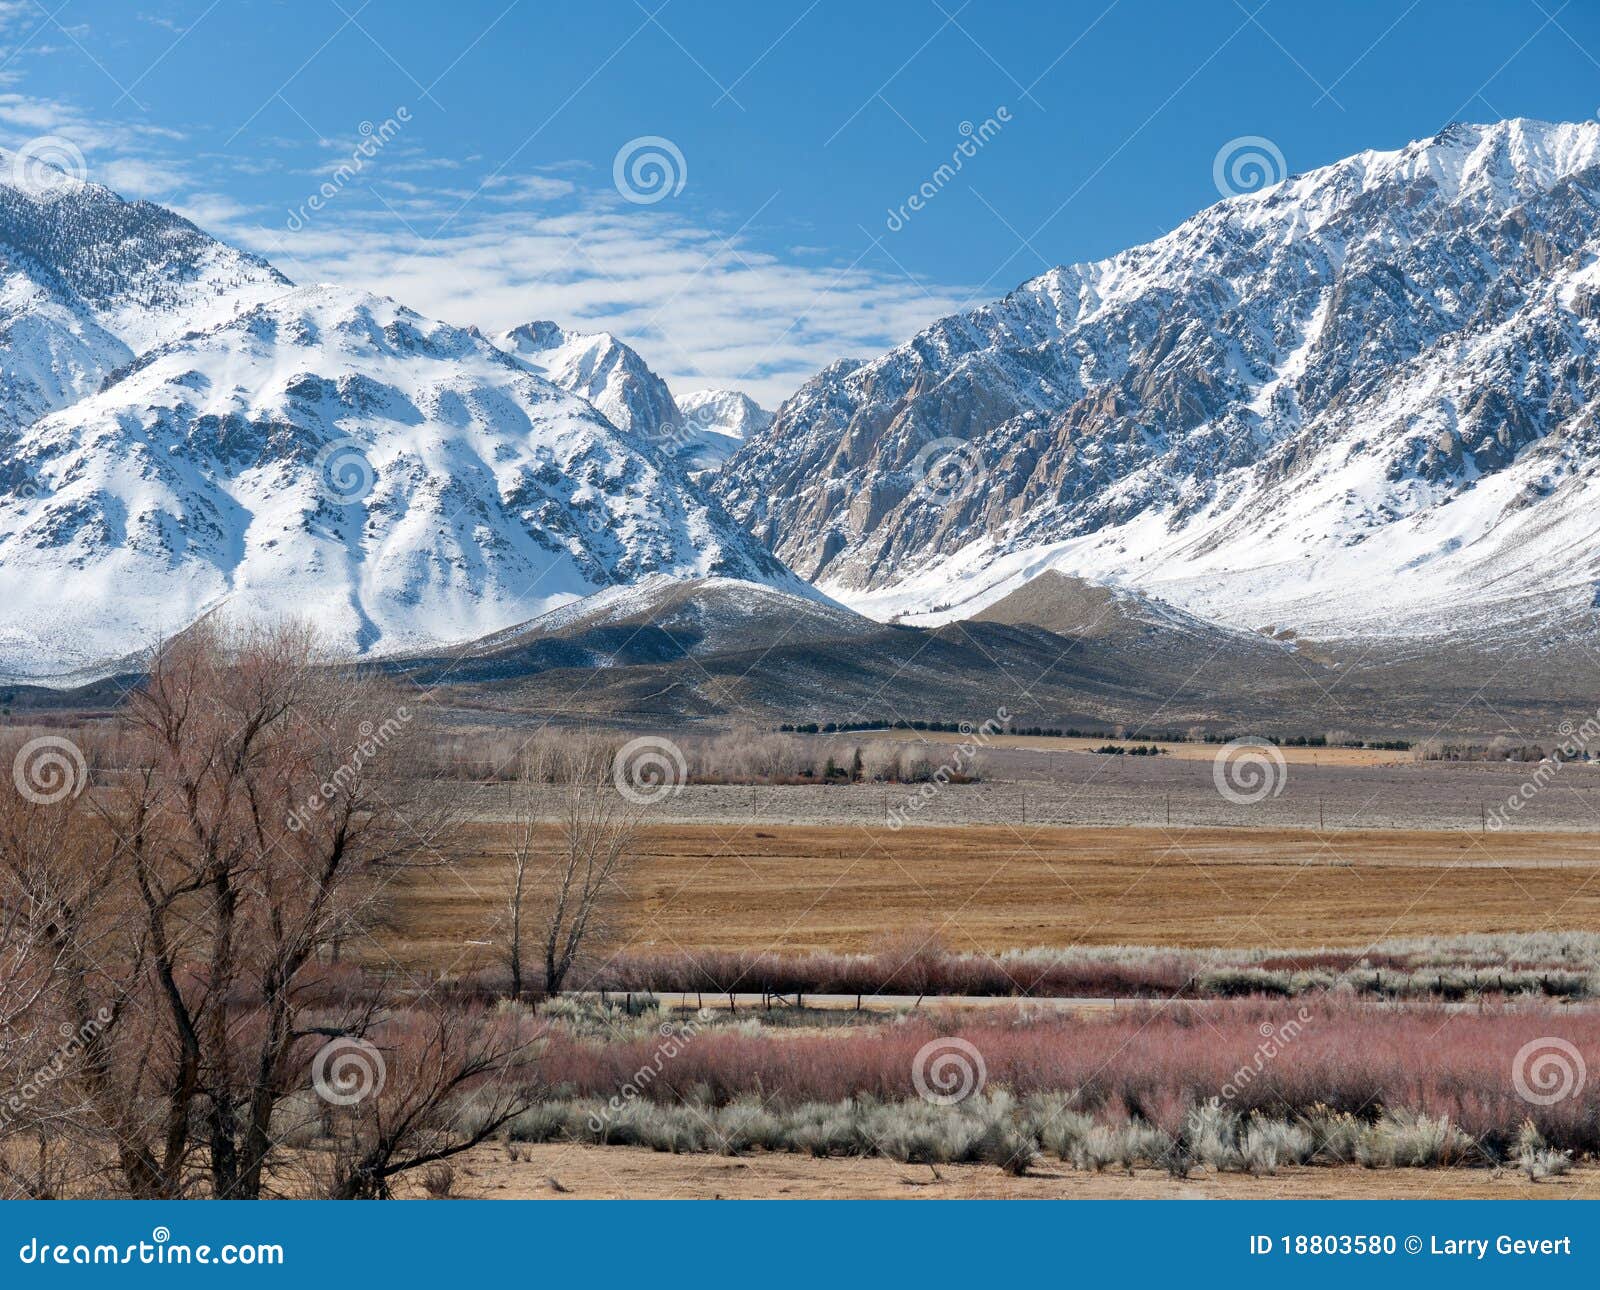 winter scene in the eastern sierra nevada range